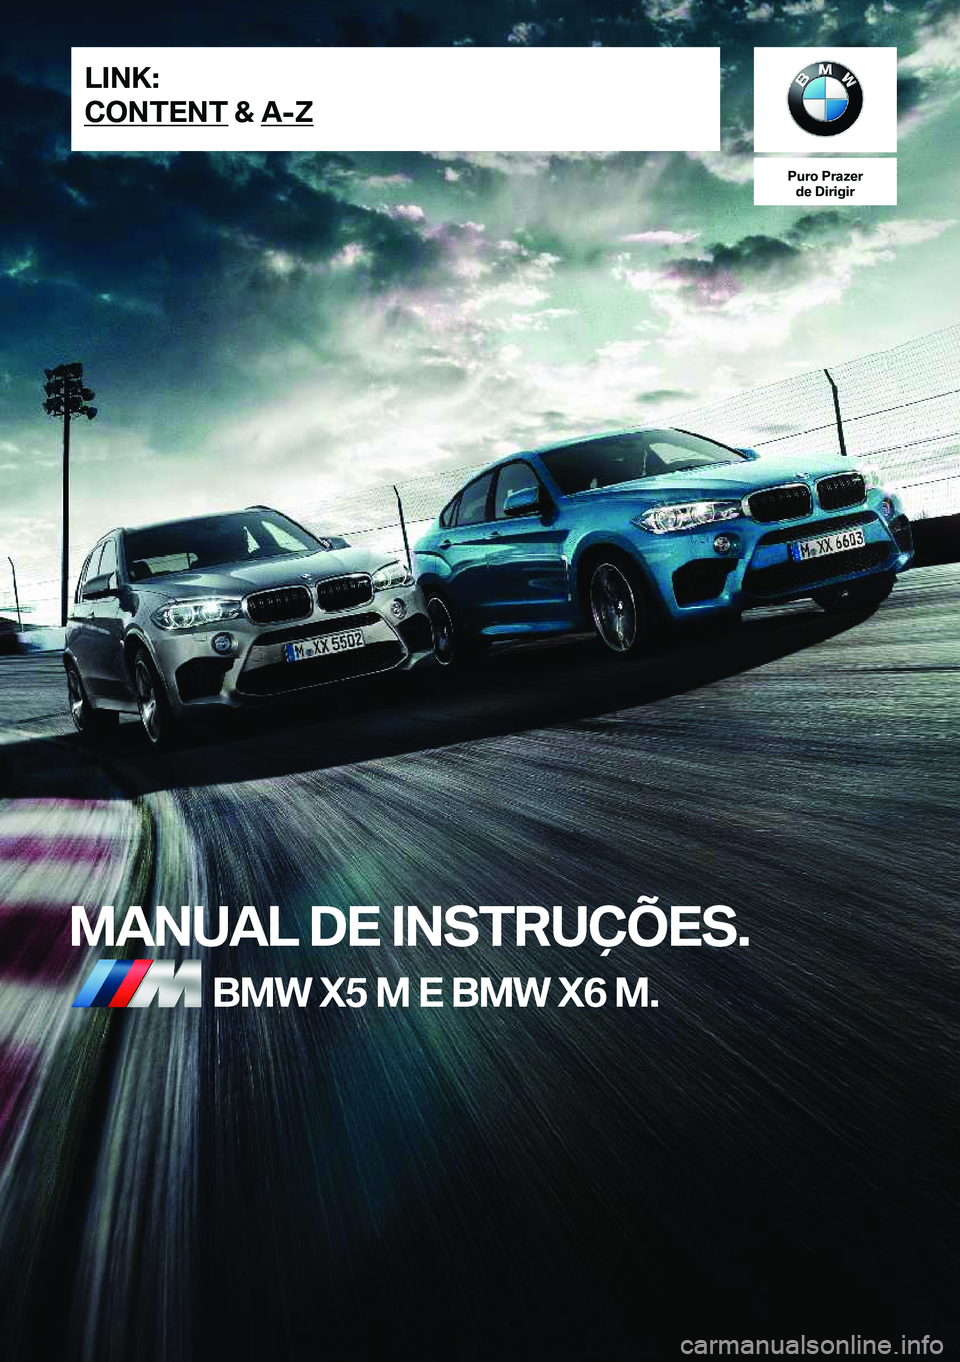 BMW X6 M 2019  Manual do condutor (in Portuguese) �P�u�r�o��P�r�a�z�e�r�d�e��D�i�r�i�g�i�r
�M�A�N�U�A�L��D�E��I�N�S�T�R�U�